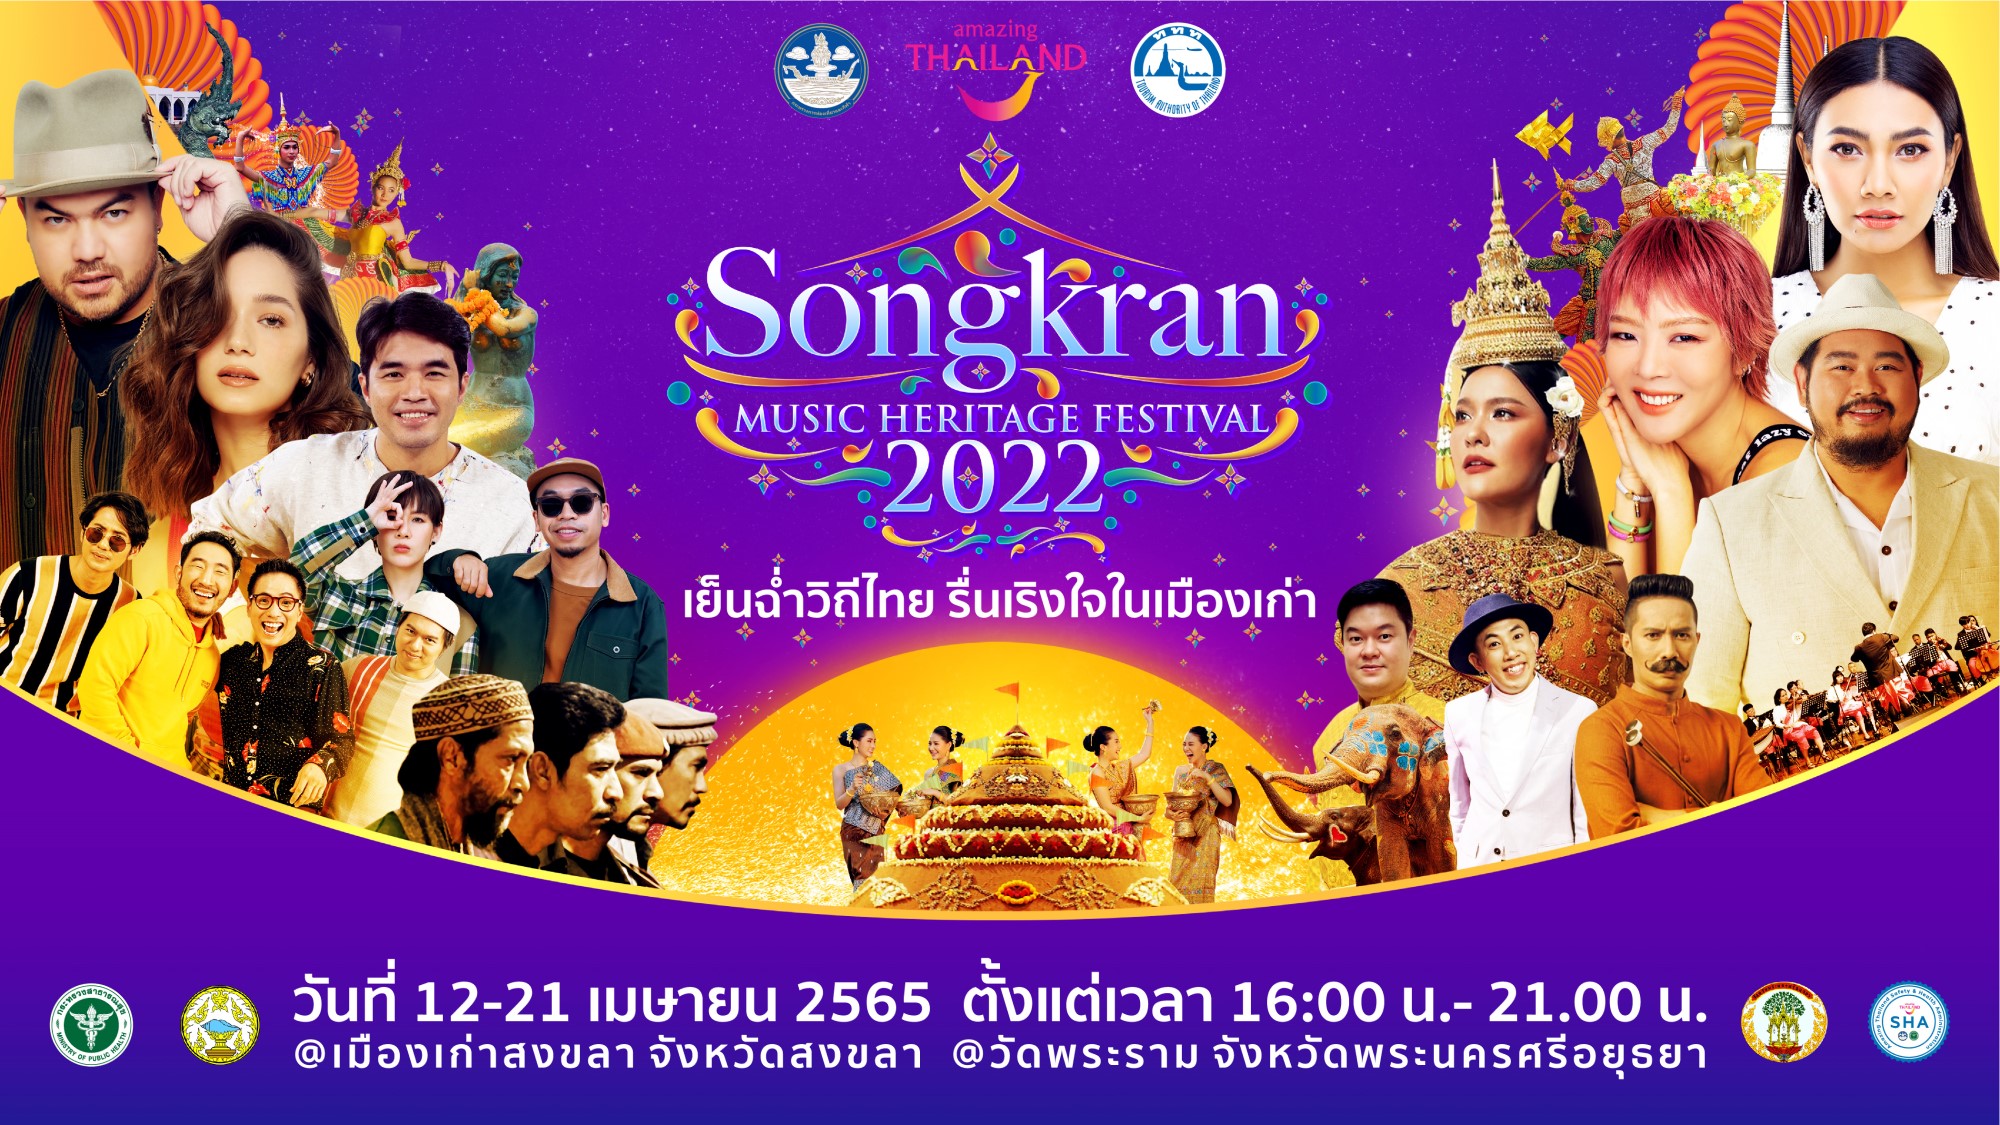 เย็นฉ่ำวิถีไทย  รื่นเริงใจในเมืองเก่า Songkran Music Heritage Festival 2022